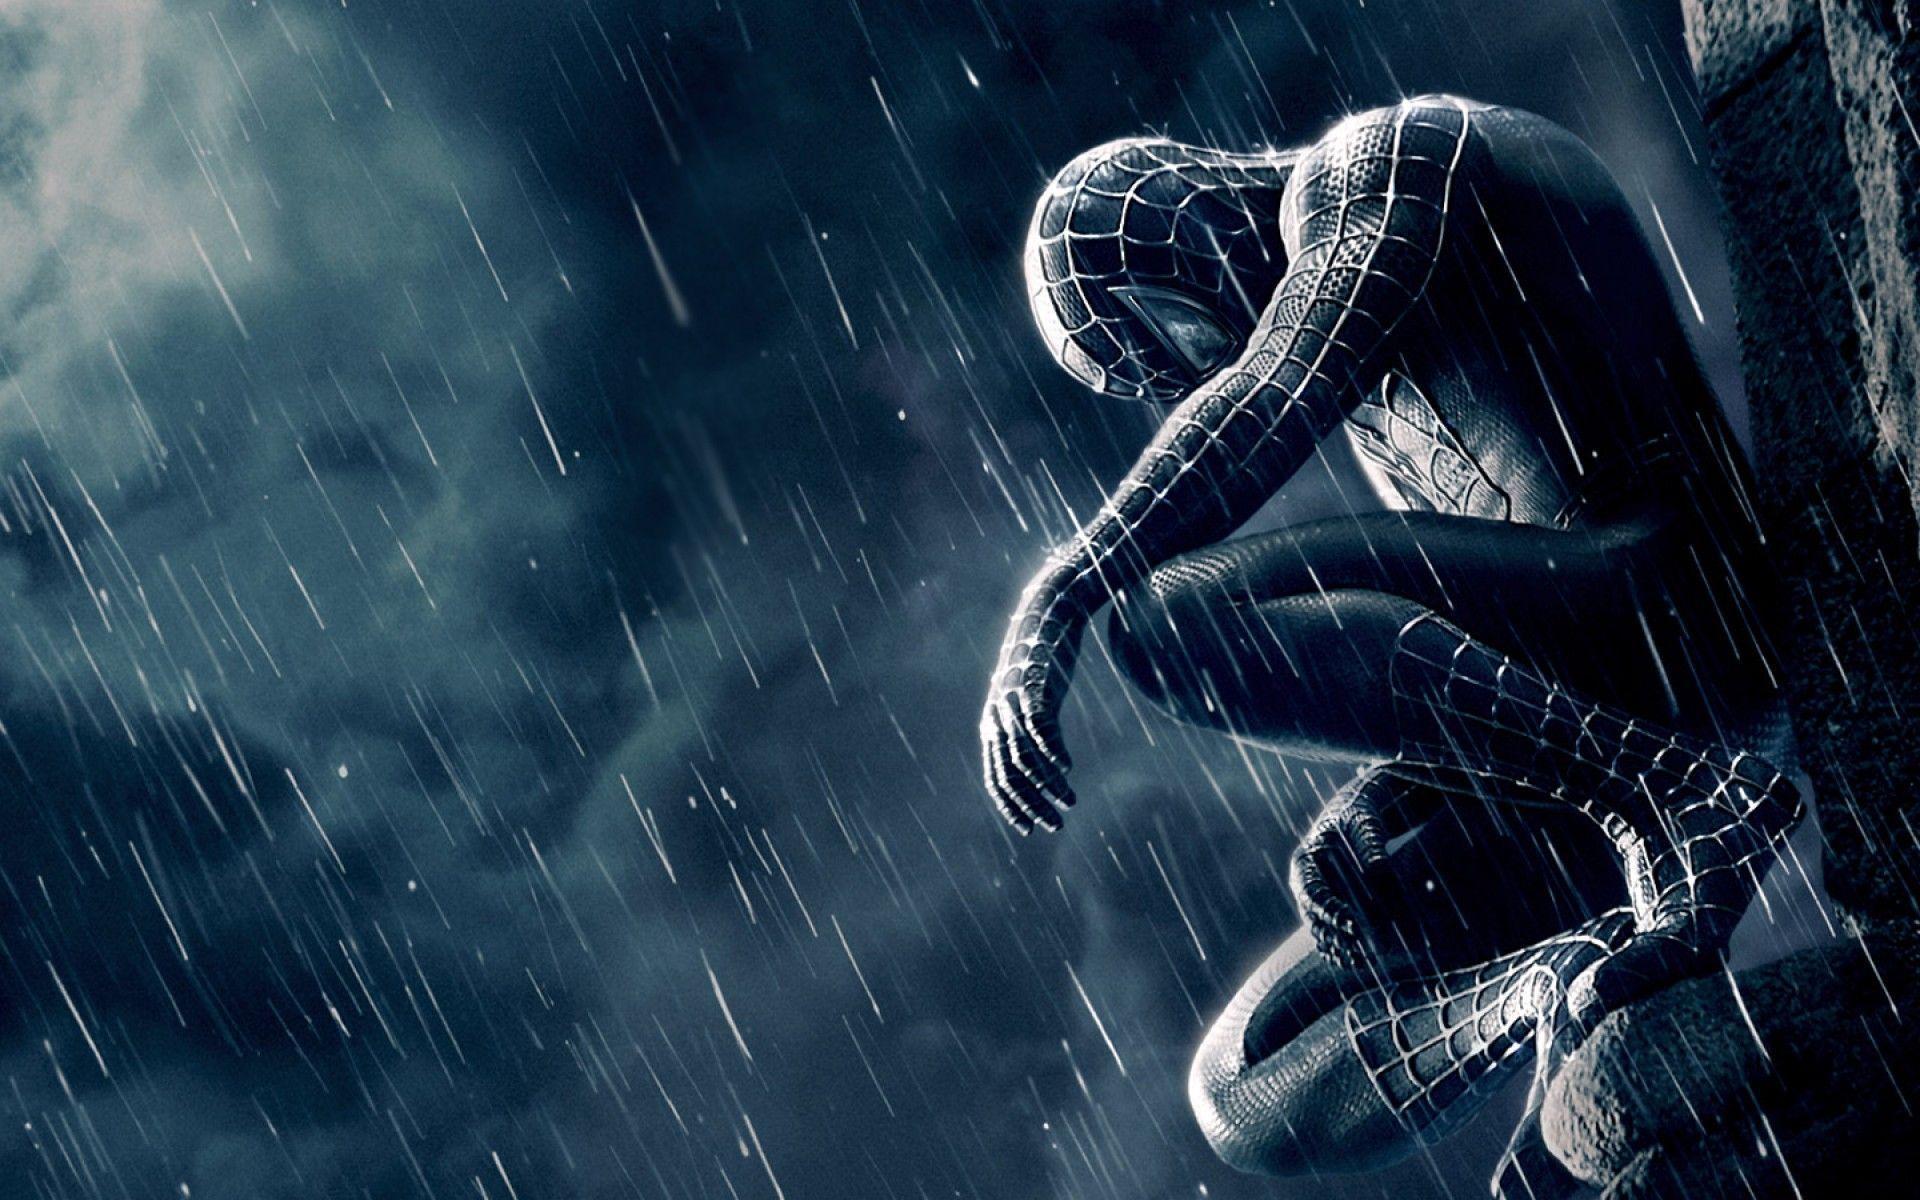 Muốn tìm kiếm hình nền Spider-Man để sử dụng làm màn hình nền trên máy tính của bạn? Tại đây, chúng tôi cung cấp cho bạn những mẫu Spider-Man desktop wallpaper đẹp mắt, chất lượng 4K độc đáo và tuyệt vời nhất. Hãy thể hiện tình yêu với nhân vật siêu anh hùng và hiệu ứng spider-web truyền thống của anh ấy.